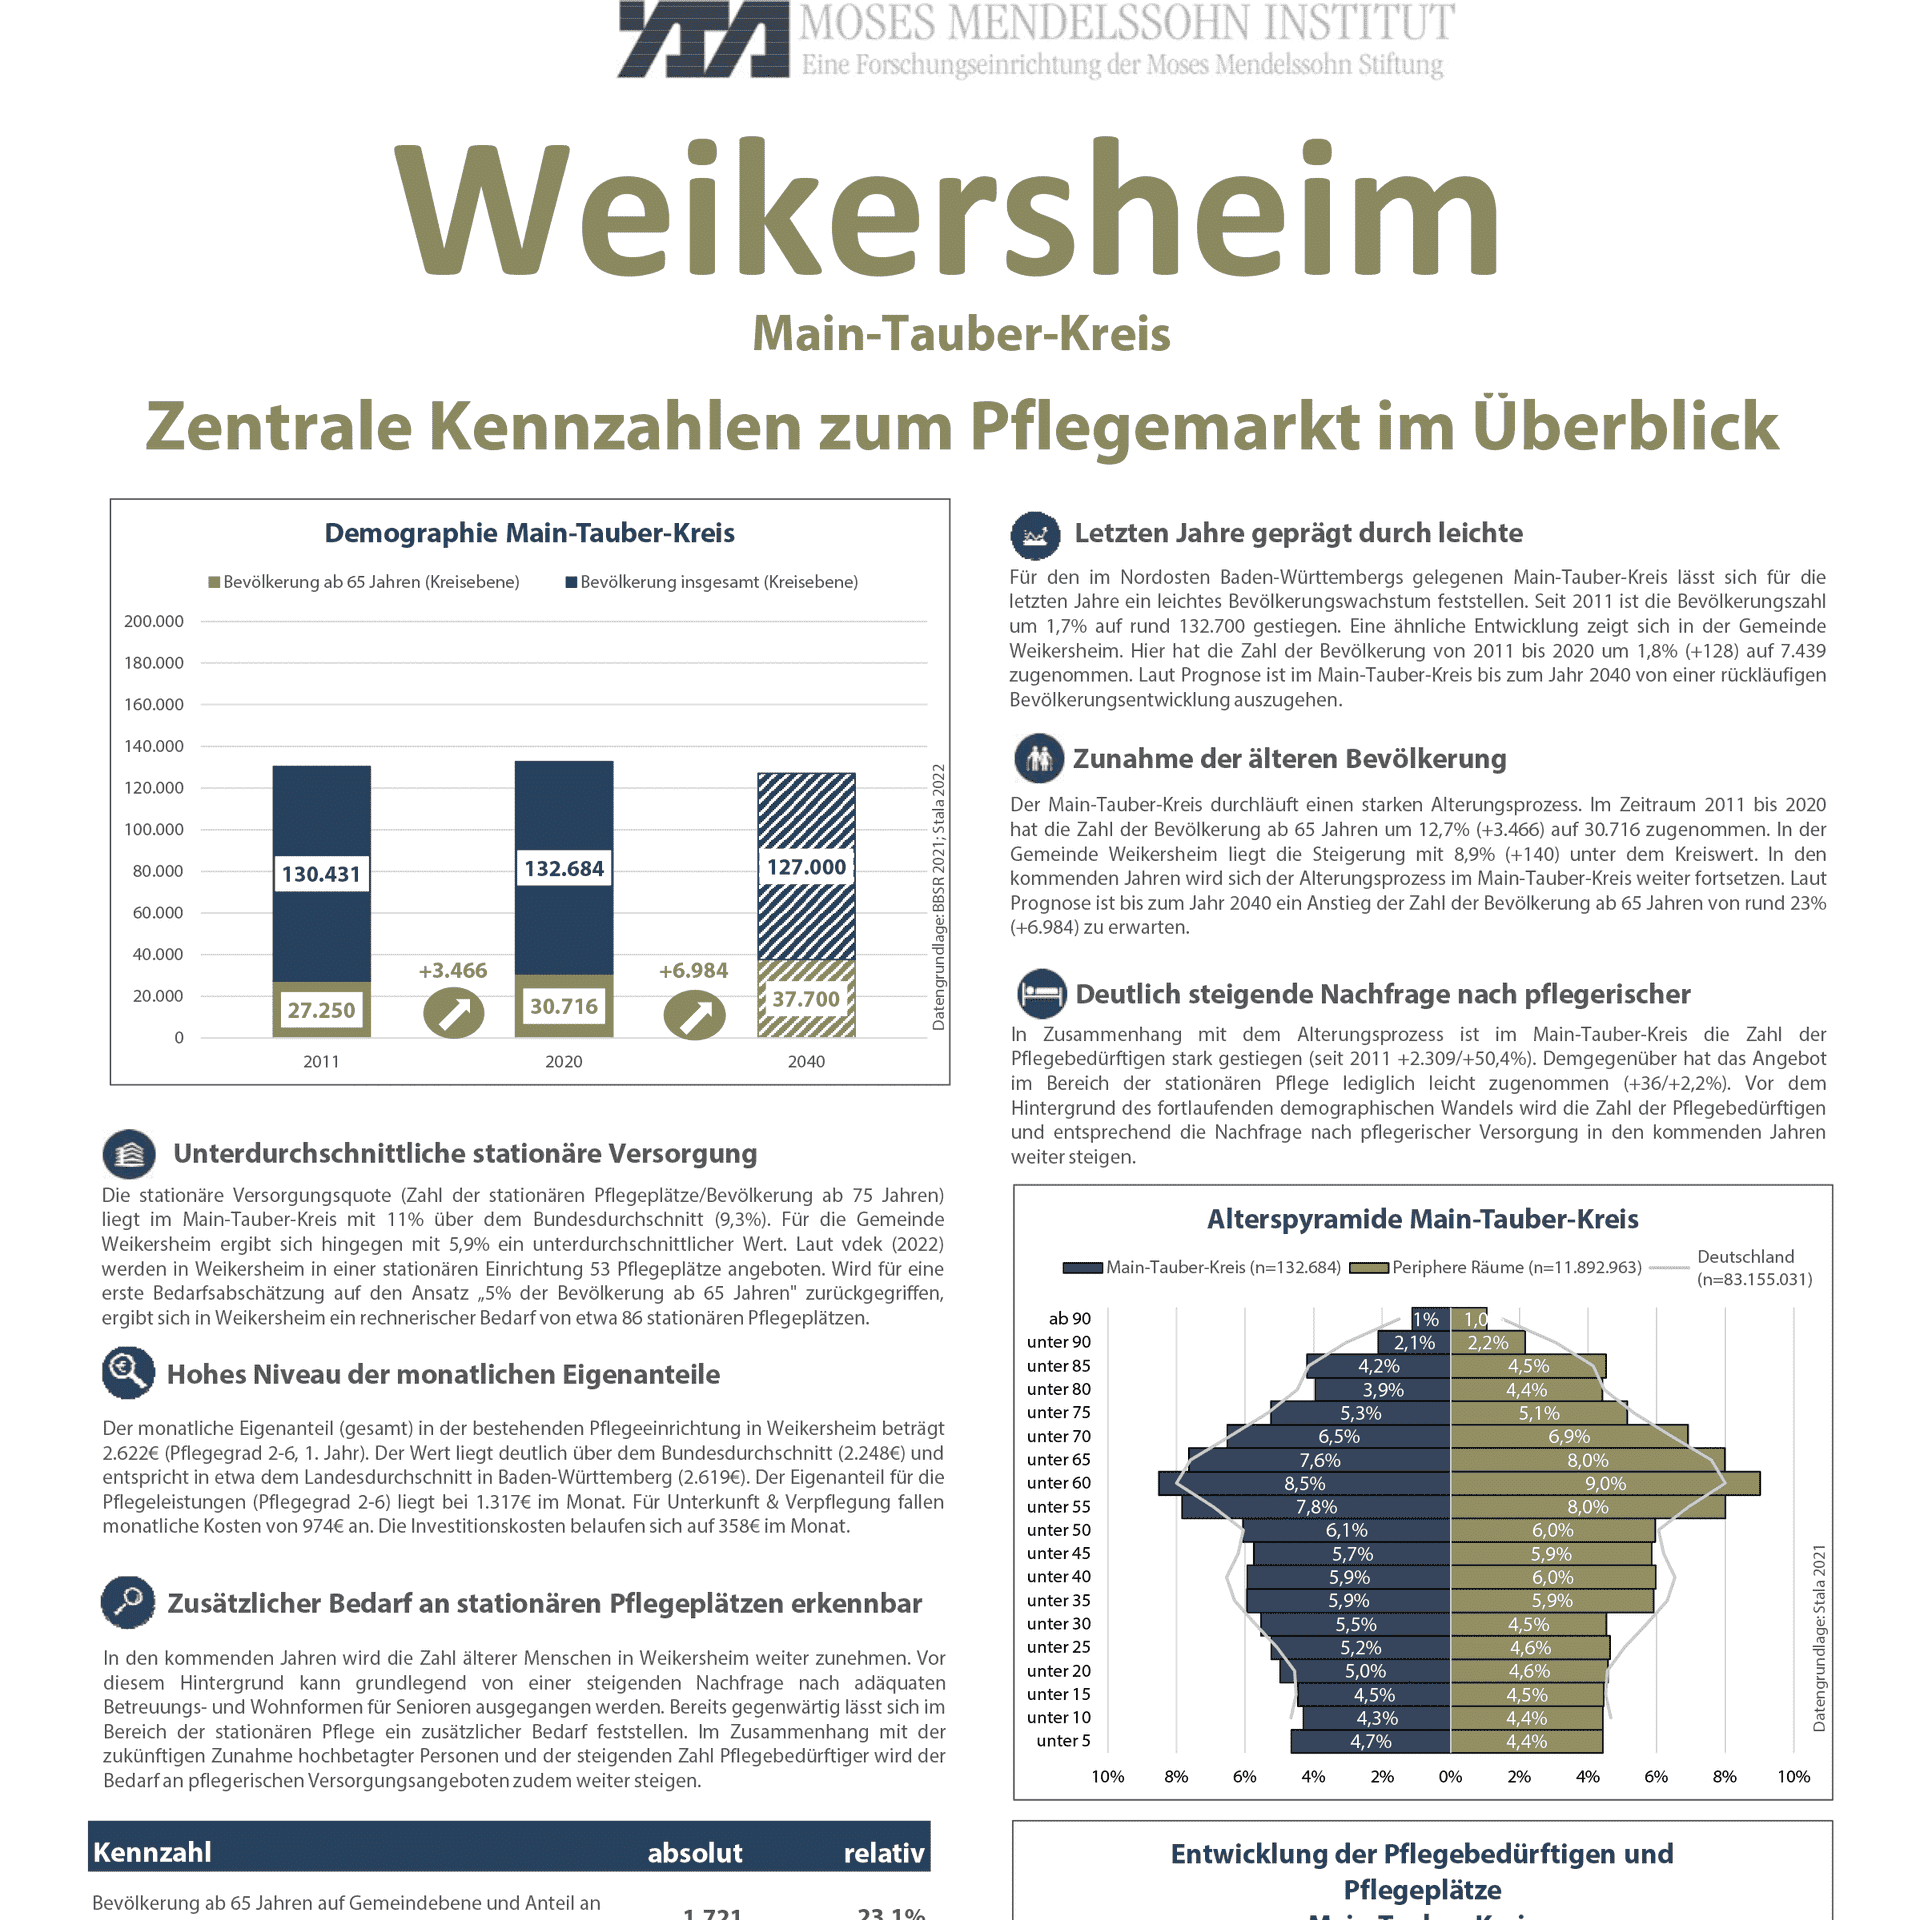 Beispiel Kennzahlen Pflegeimmobilien Weikersheim.png